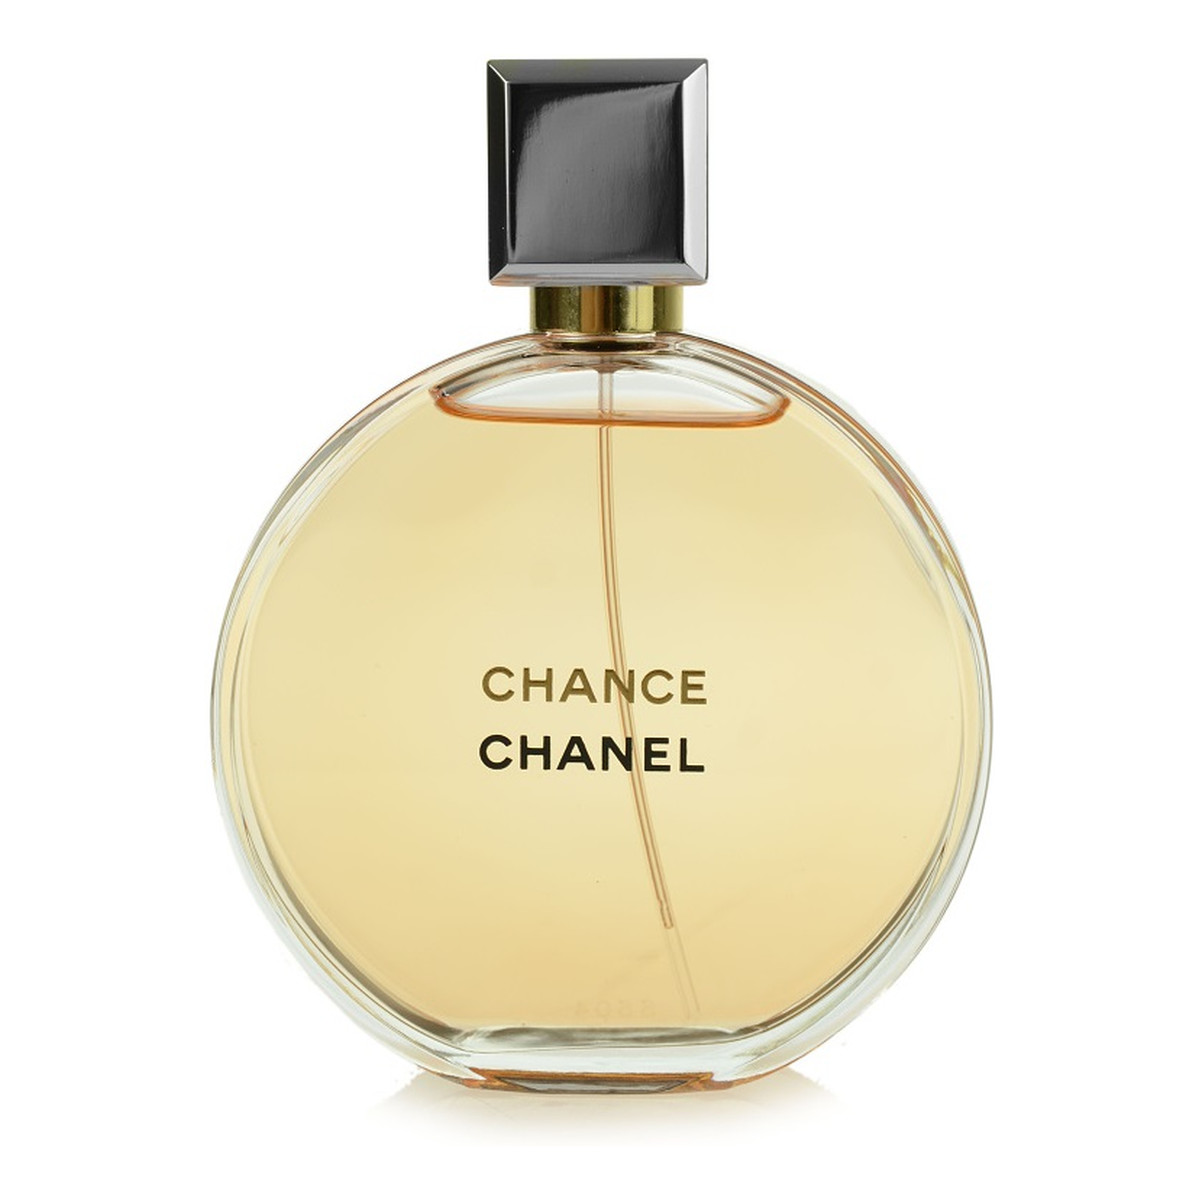 Chanel Chance woda perfumowana dla kobiet 100ml